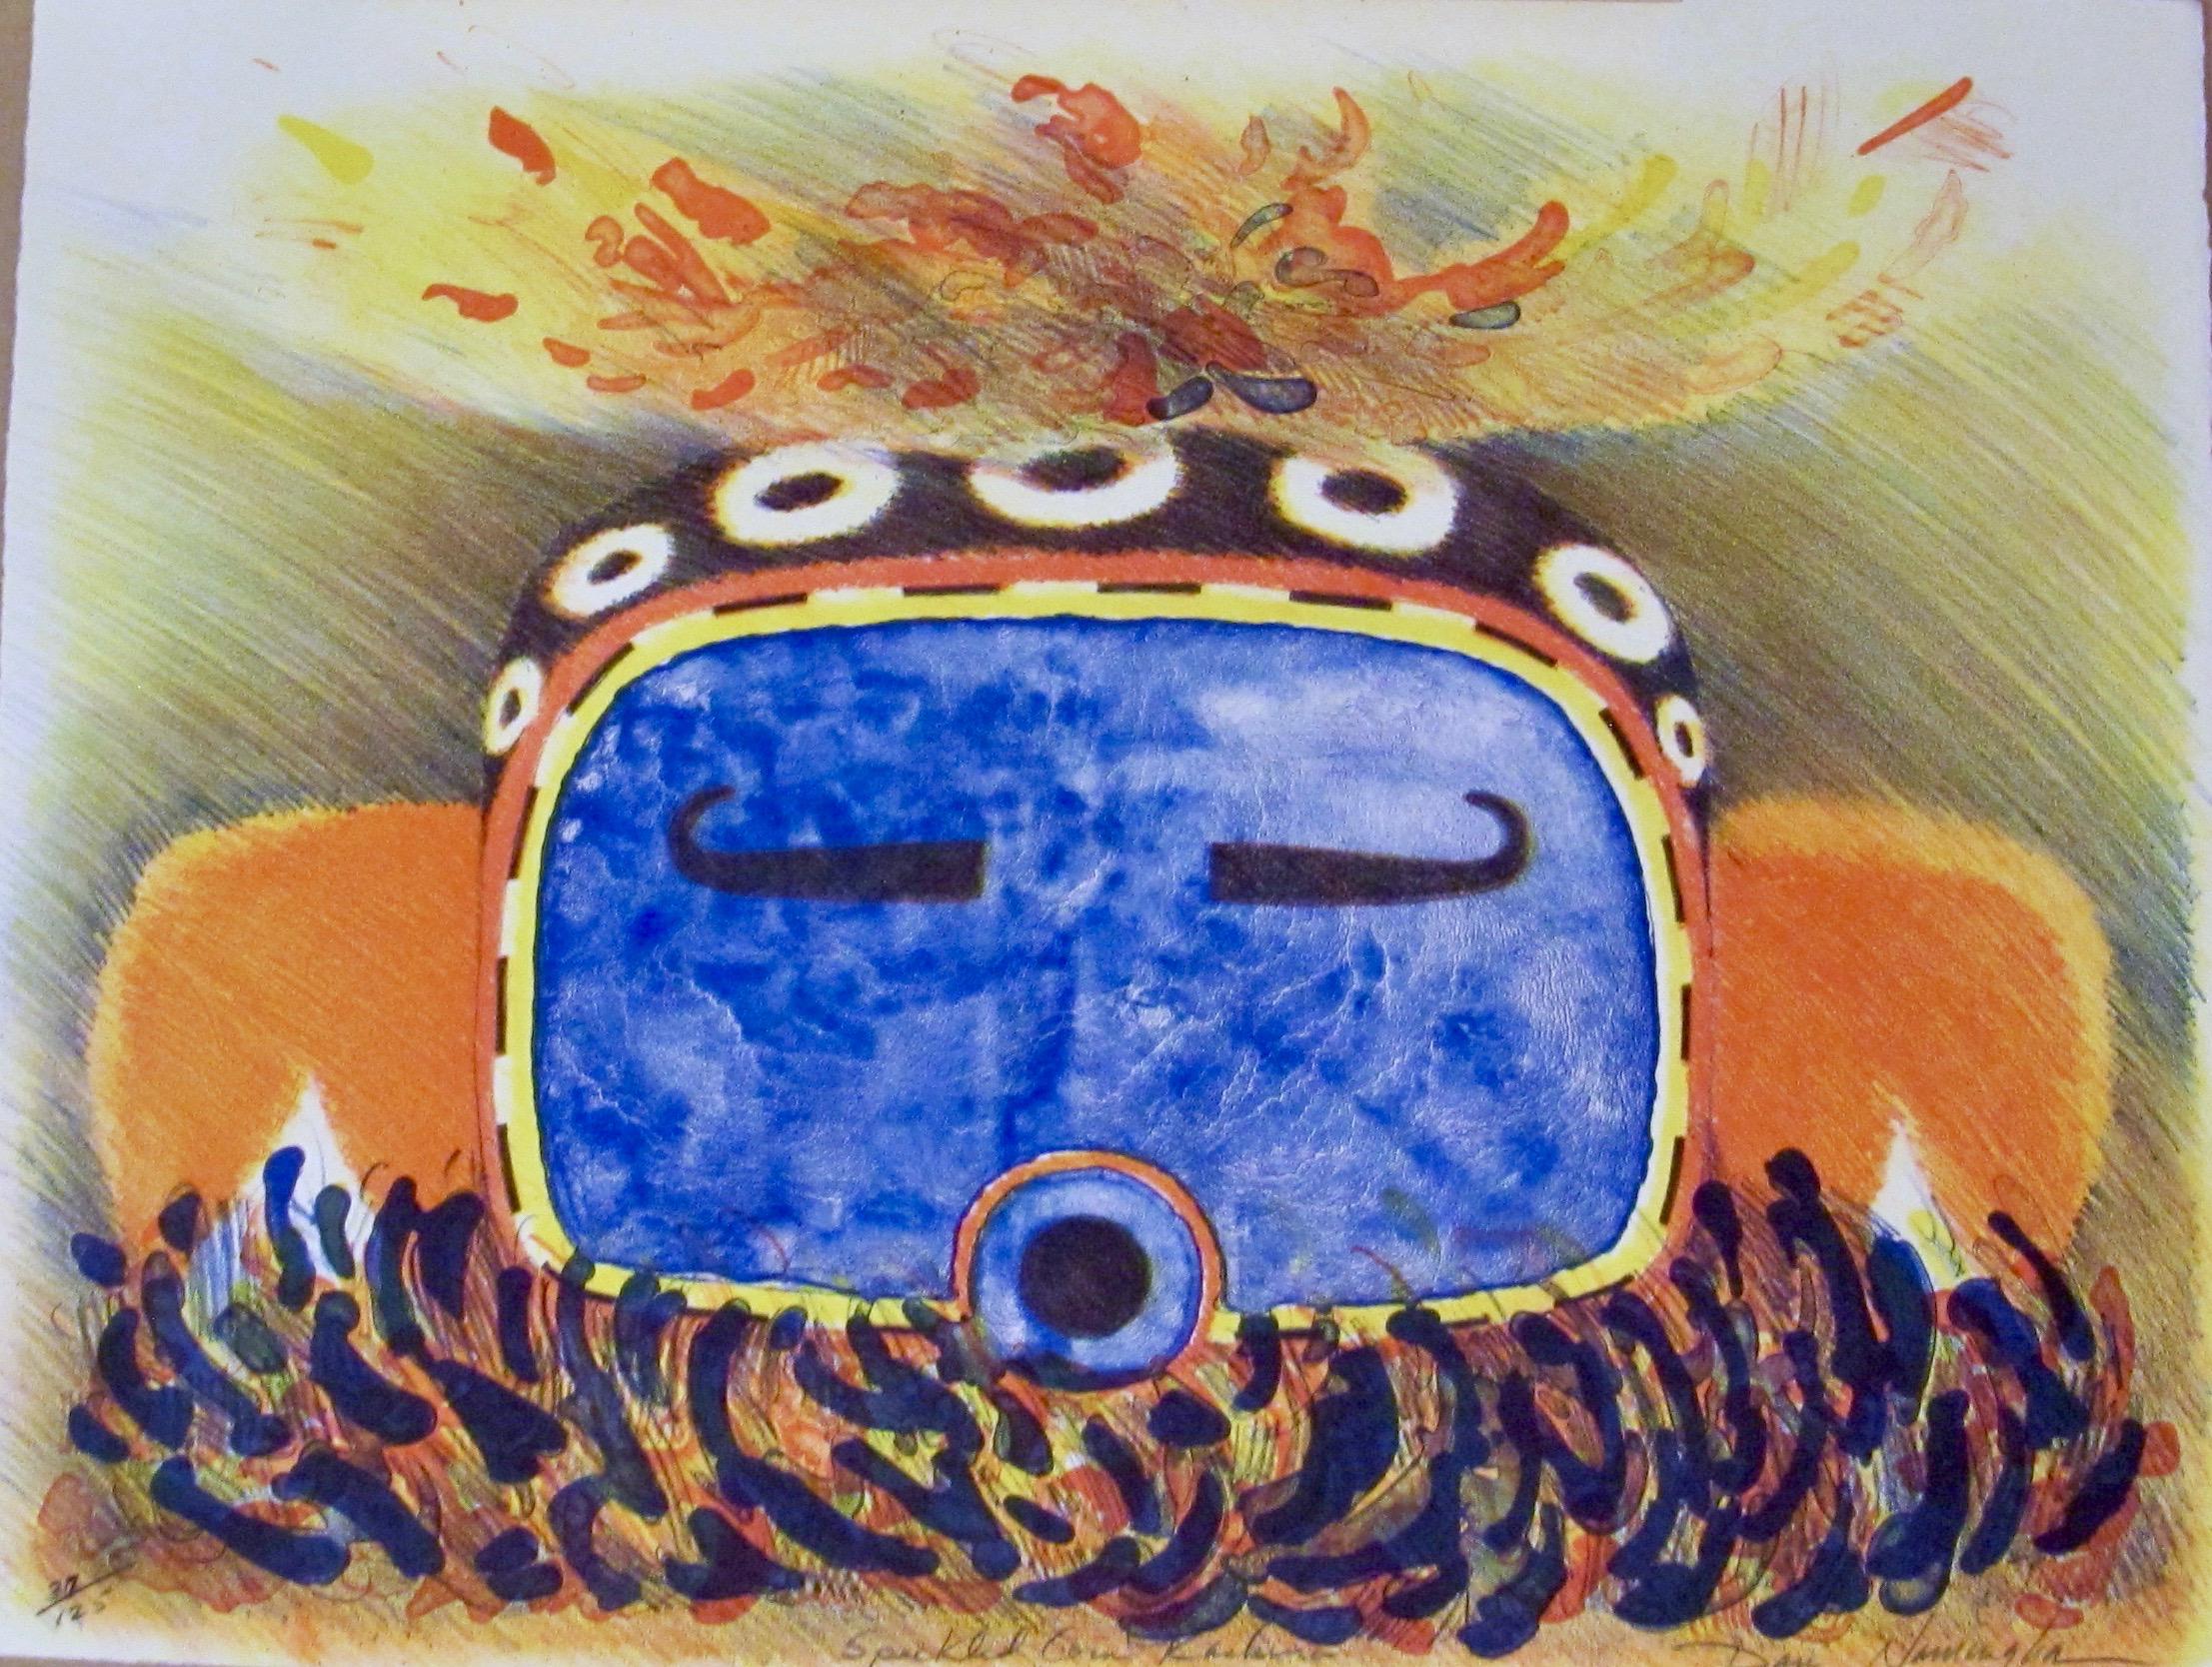 Speckled Corn Kachina, Dan Namingha, lithographie, Hopi, kachina, bleu, orange. 

lithographie en édition limitée tirée à la main
signé et numéroté par l'artiste

Glenn Green Galleries présente également des peintures, des gravures et des sculptures